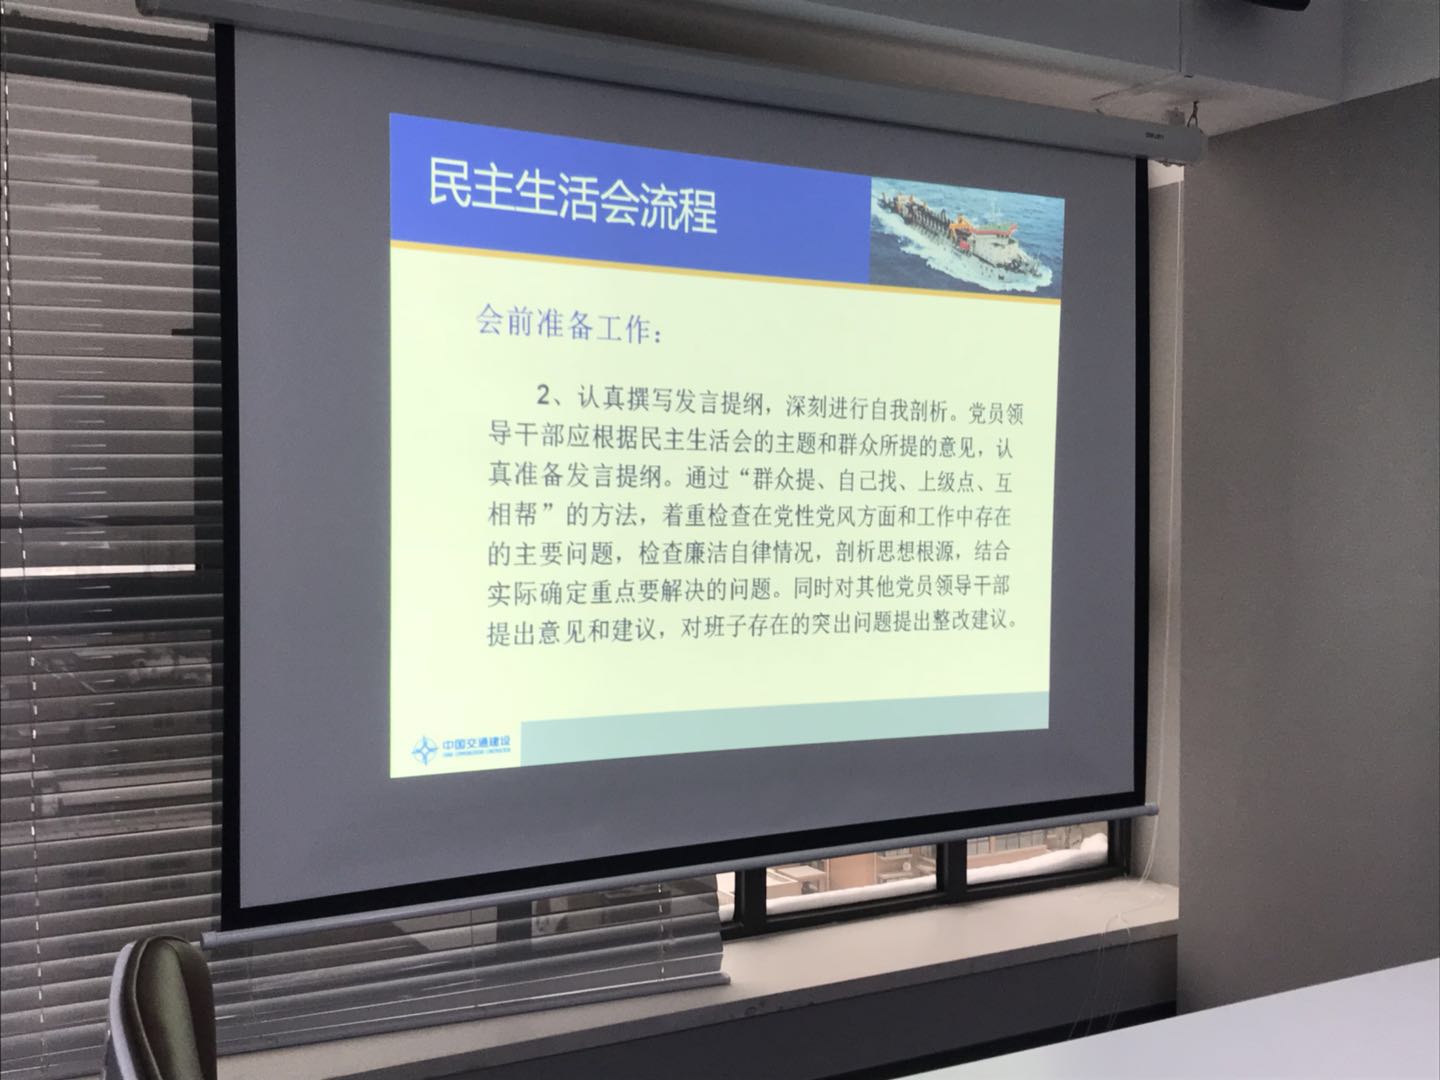 中共陕西泰尔实业有限公司支部召开2018年第一次民主生活会